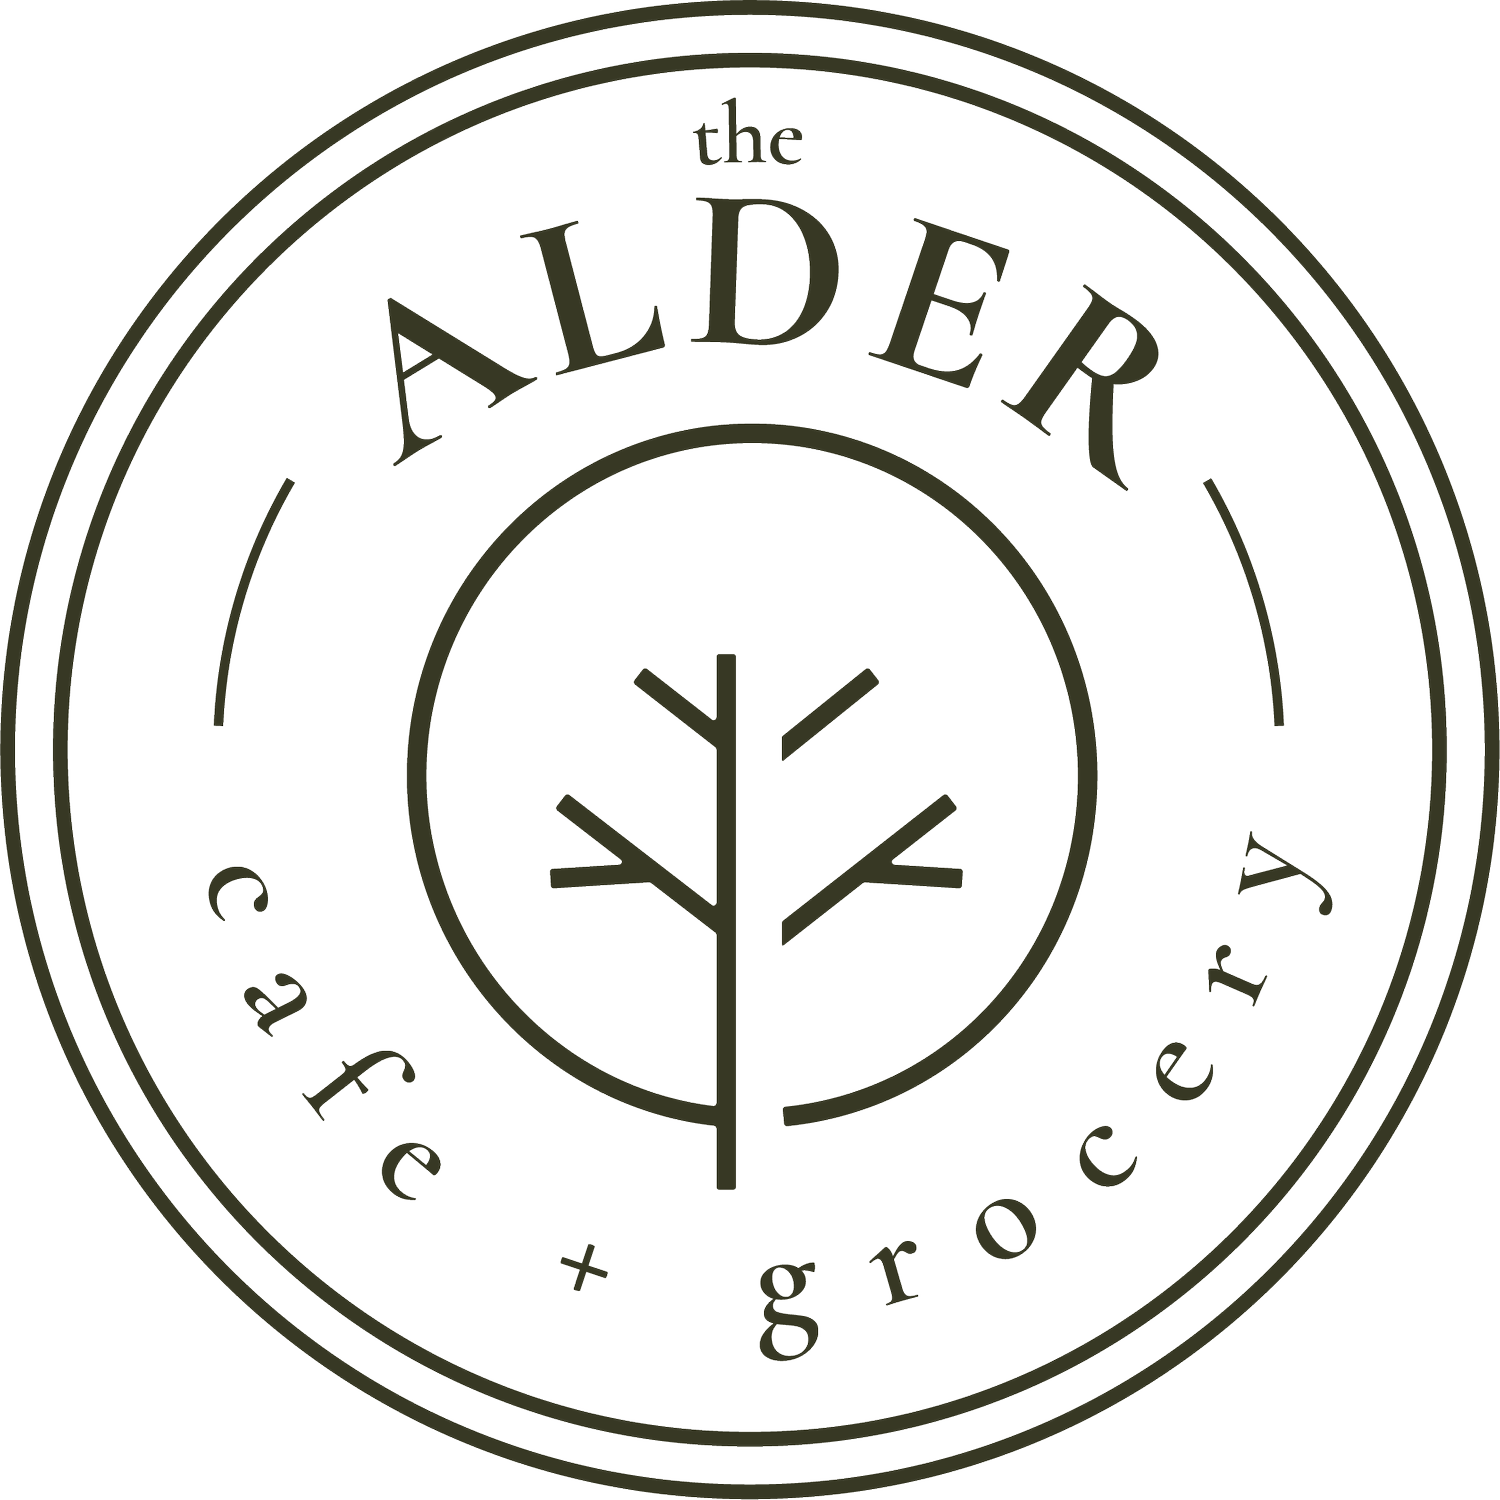 The Alder Cafe + Grocery